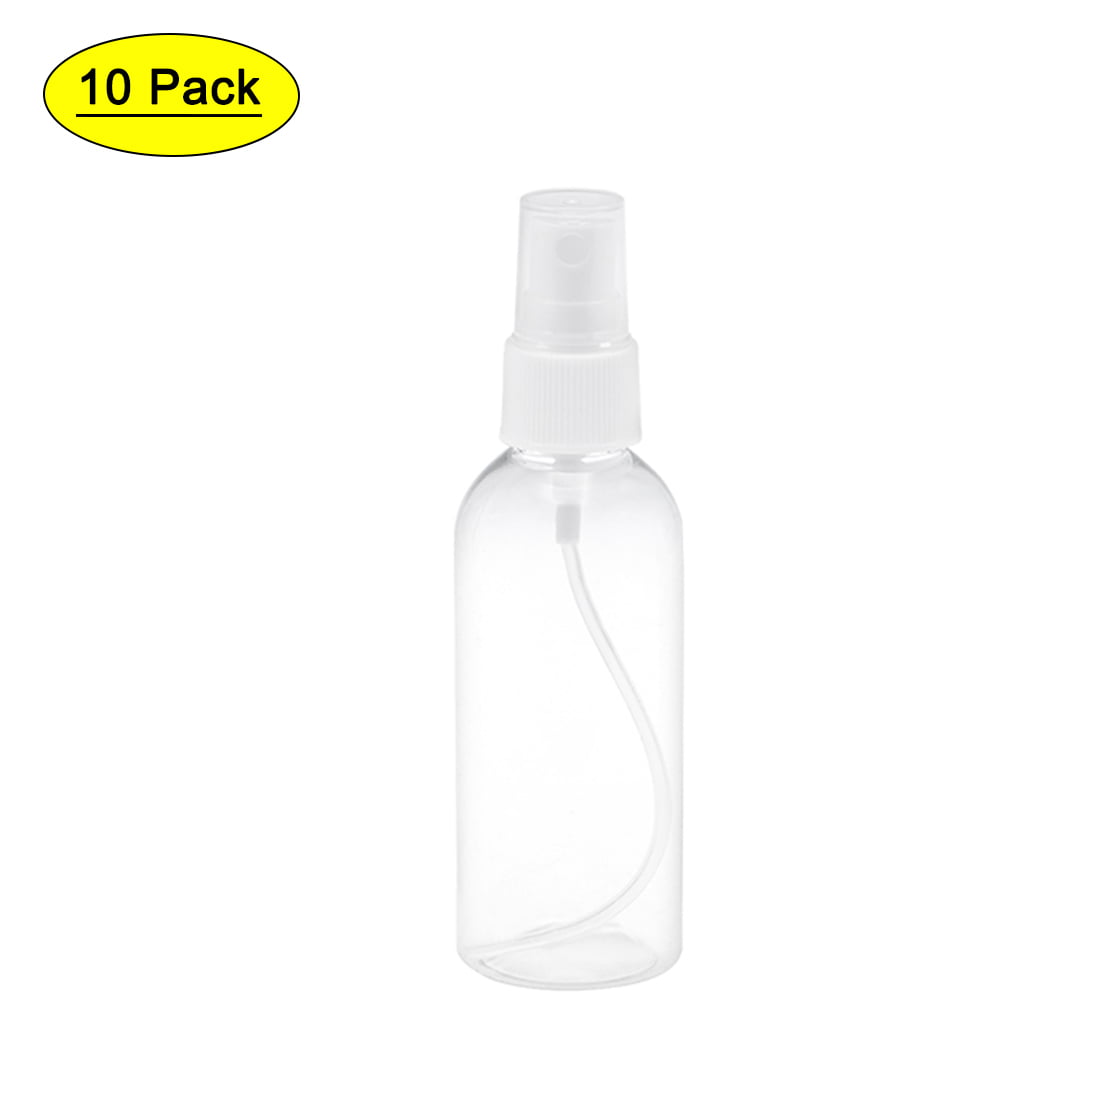 2Pcs Plastic Leak Proof Spray Bottles Sprayer for Cleaning Solution 500ml FD8 